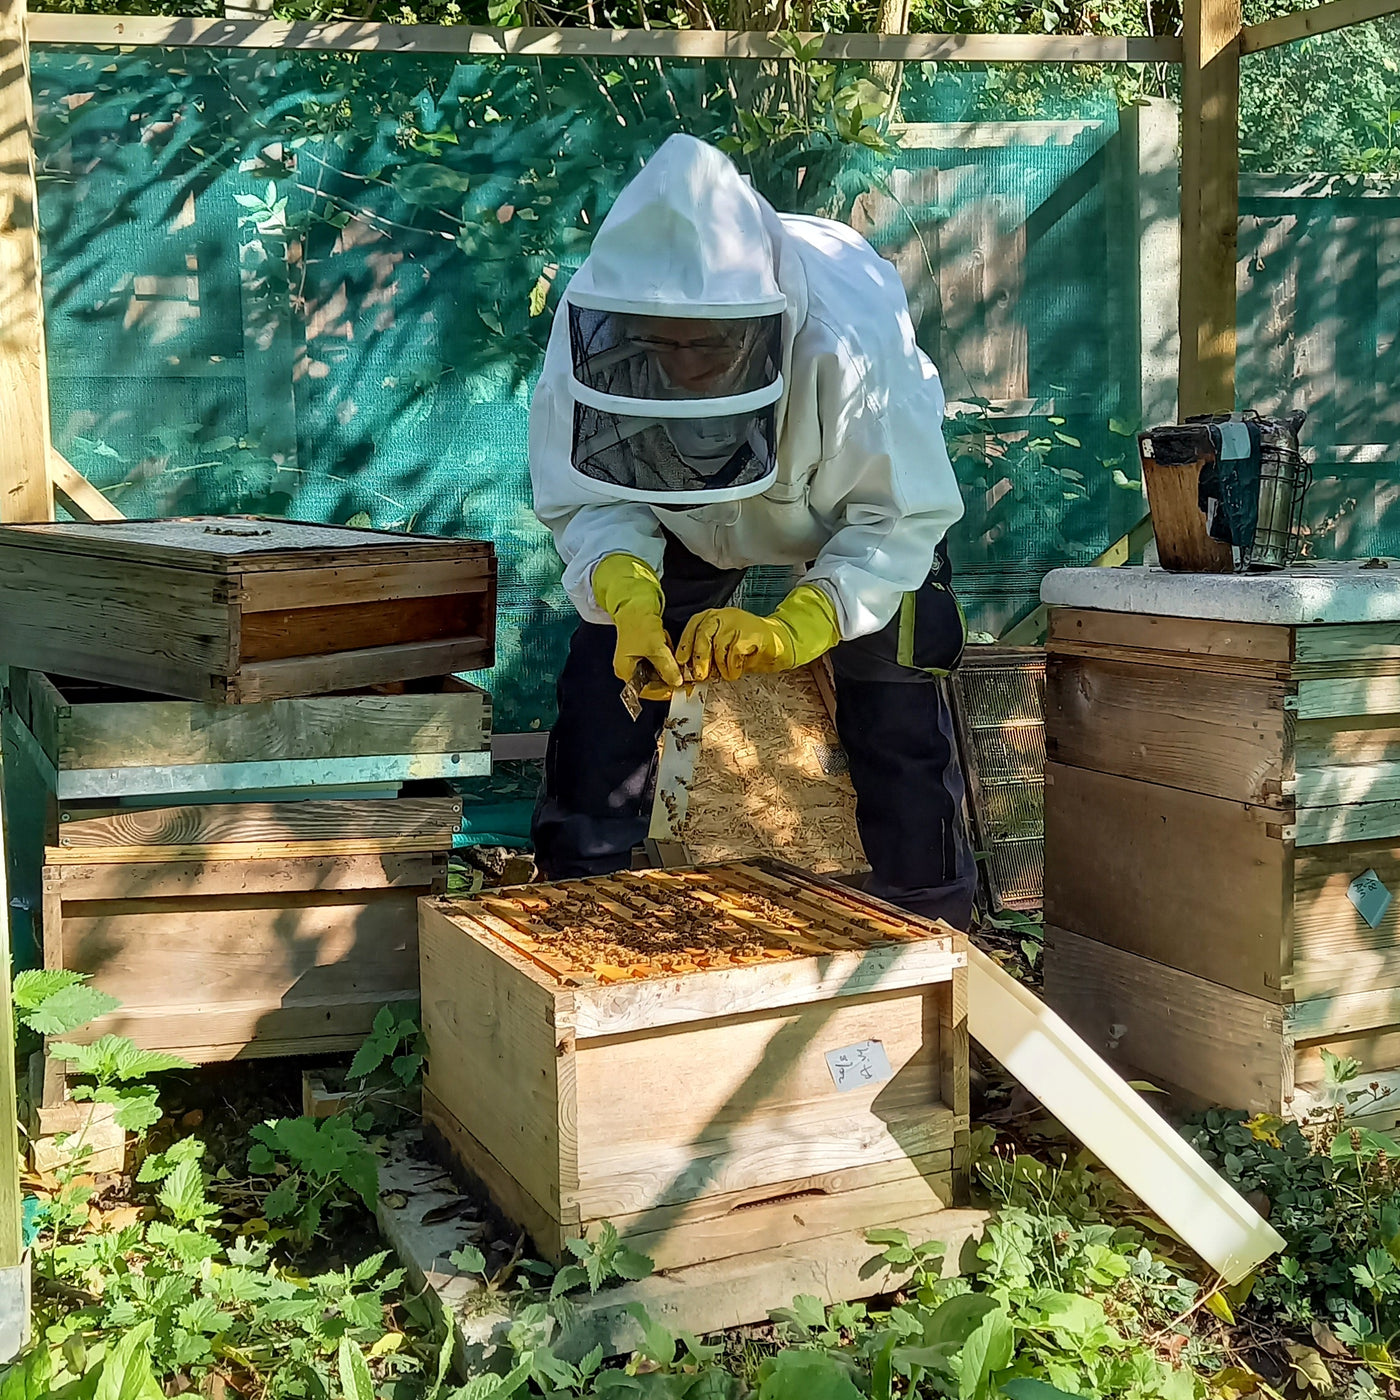 Honey from a garden, Dulwich, London